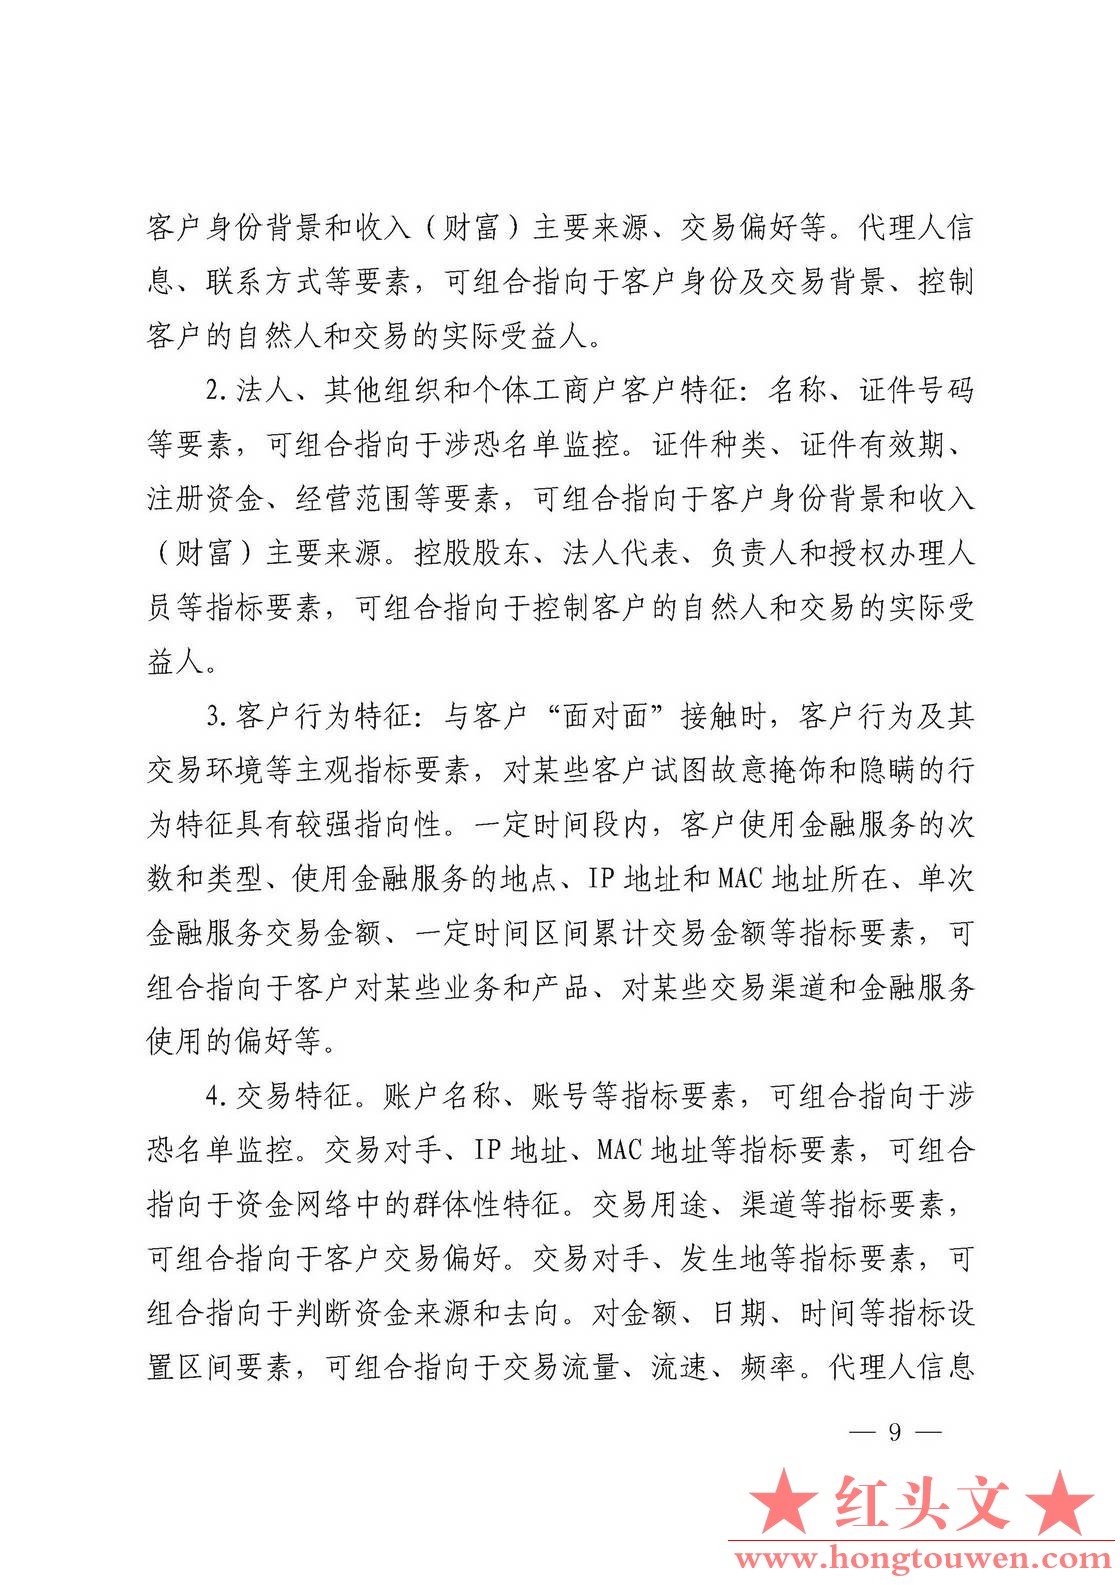 银发[2017]108号-中国人民银行关于印发《义务机构反洗钱交易监测标准建设工作指引》的.jpg